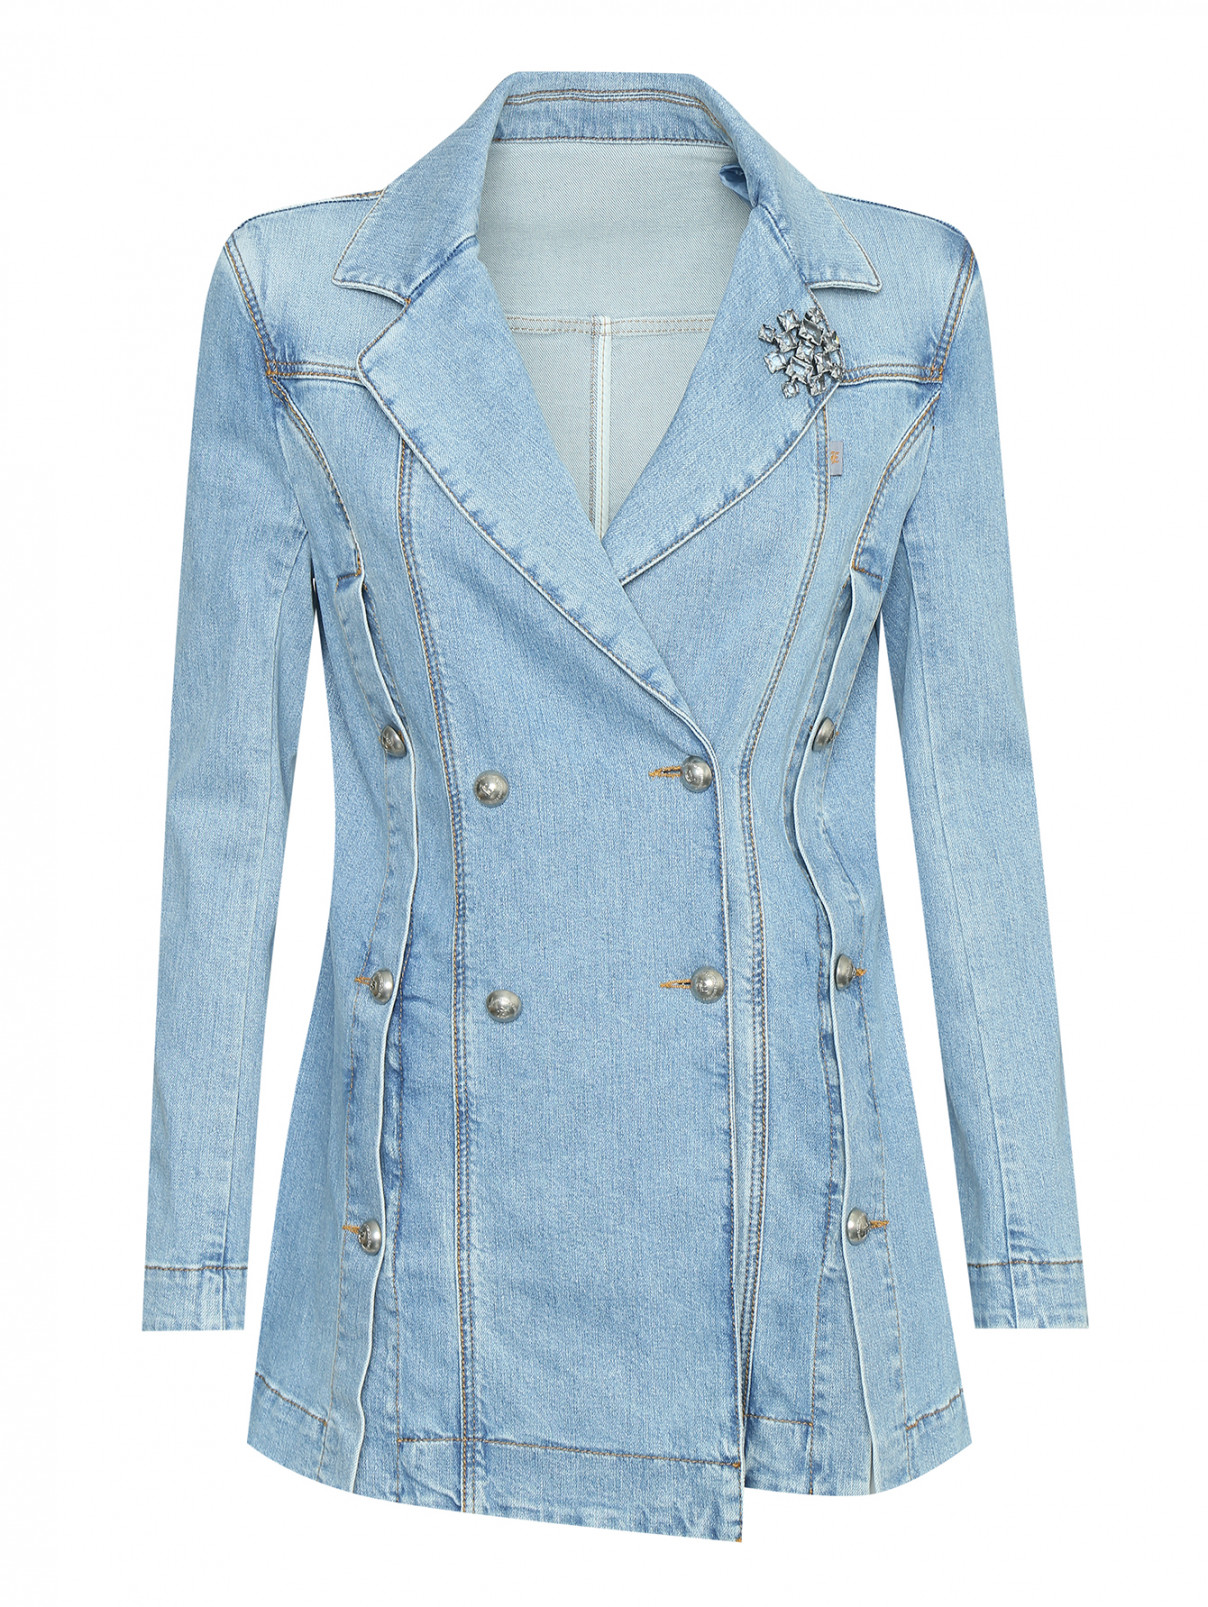 Двубортная джинсовая куртка с брошью Ermanno Scervino  –  Общий вид  – Цвет:  Синий